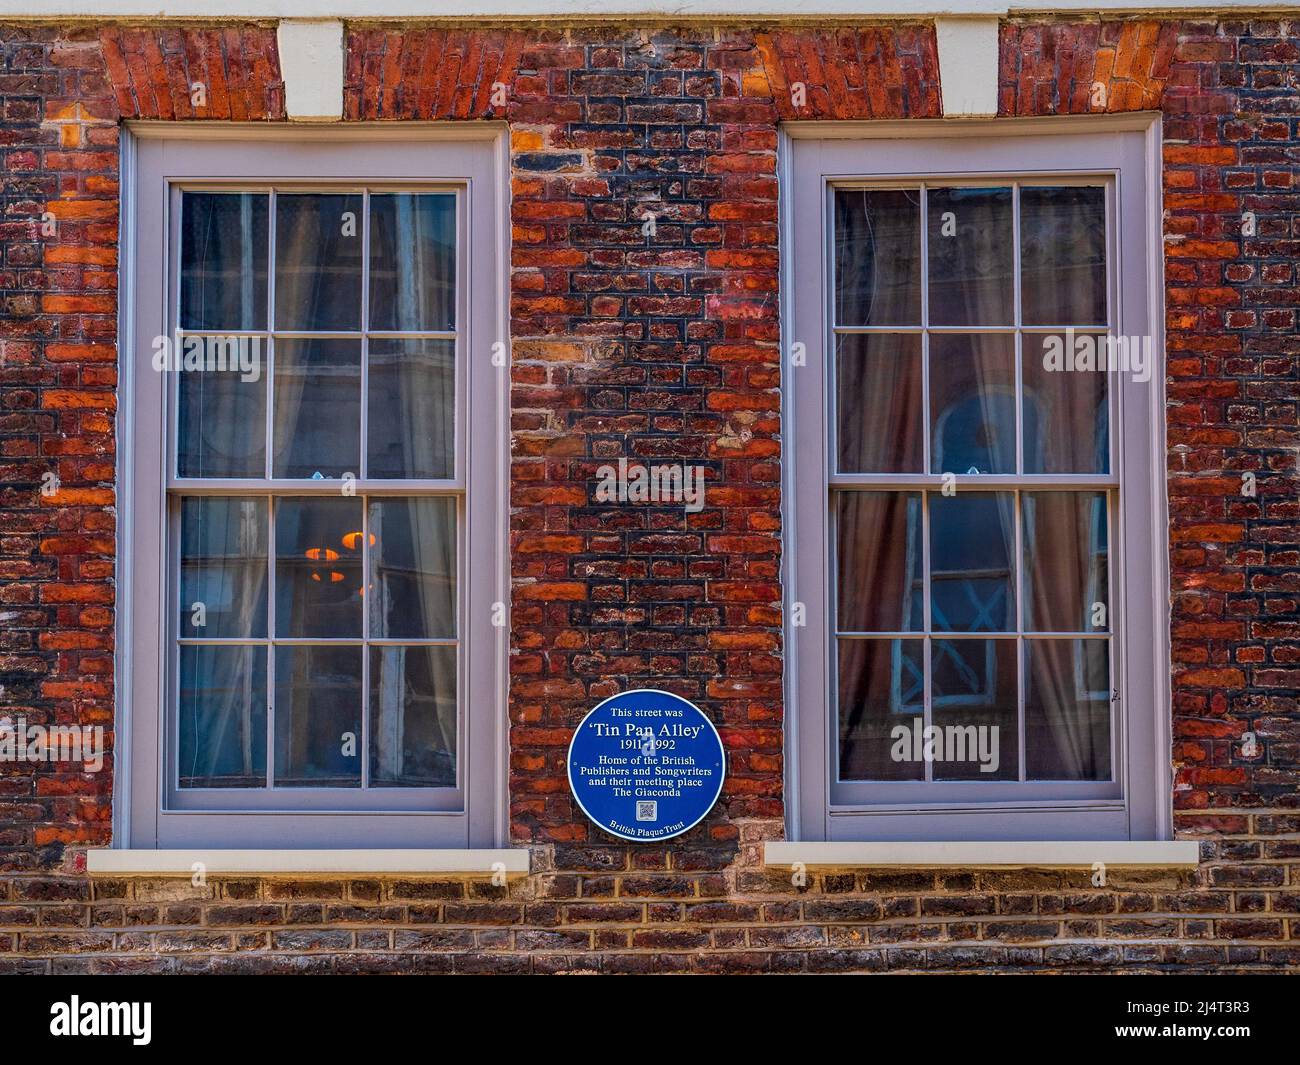 Denmark St Blue plaque - cette rue était 'Tin Pan Alley' 1911-1992 maison des éditeurs et compositeurs britanniques et leur lieu de rencontre le Giaconda Banque D'Images